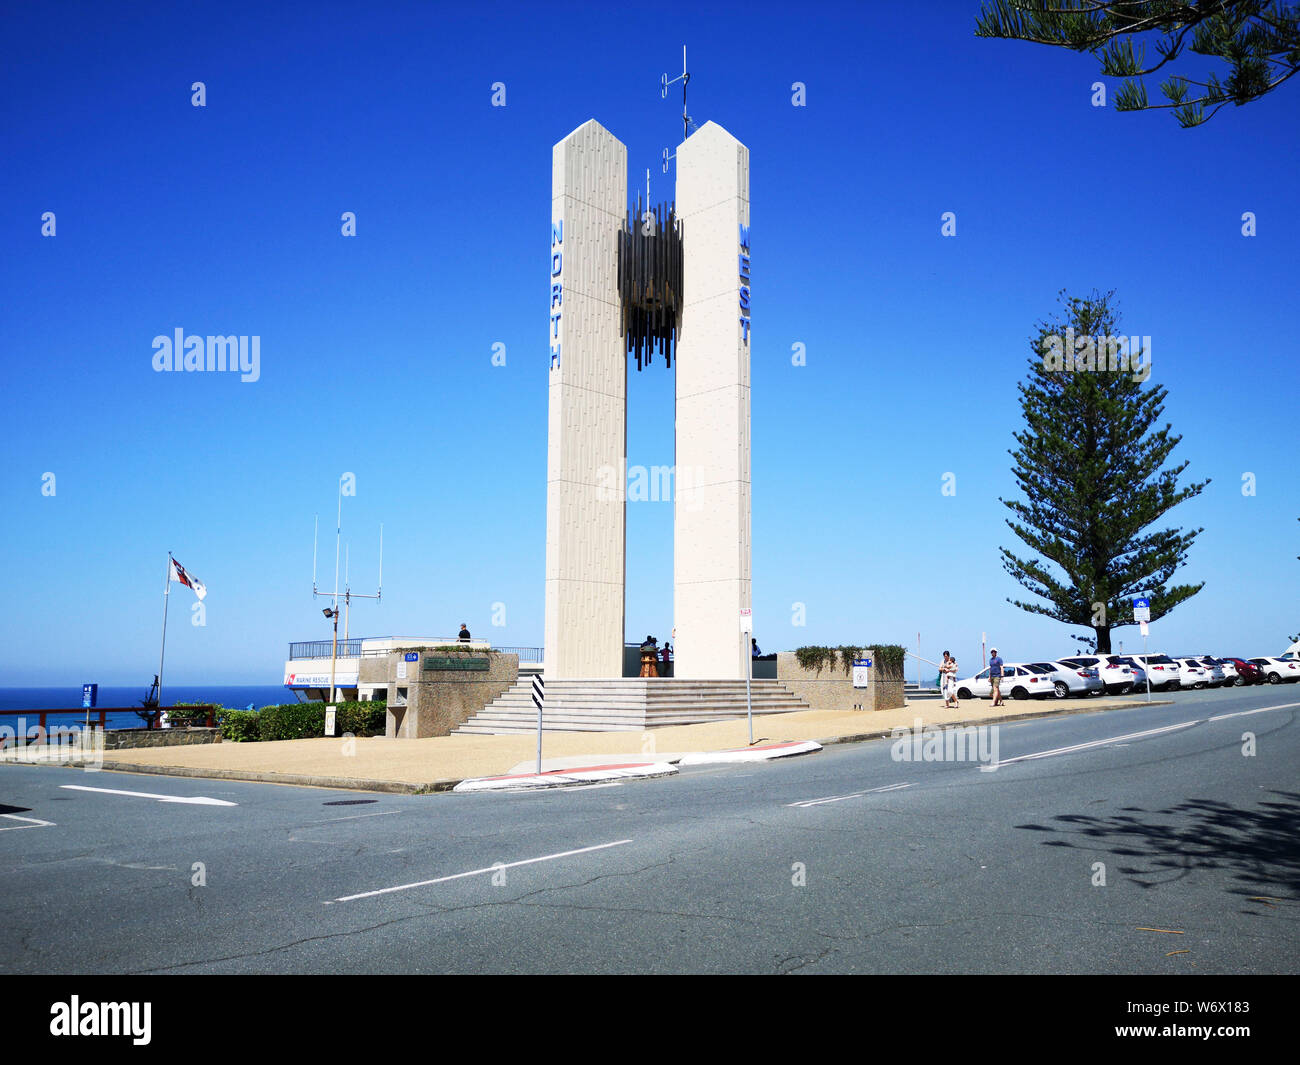 Coolangatta, Australia: El 24 de marzo de 2019: El Capitán Cook Memorial se encuentra ubicado en el punto de peligro. Marca la frontera entre New South Wales y Queensland. Foto de stock